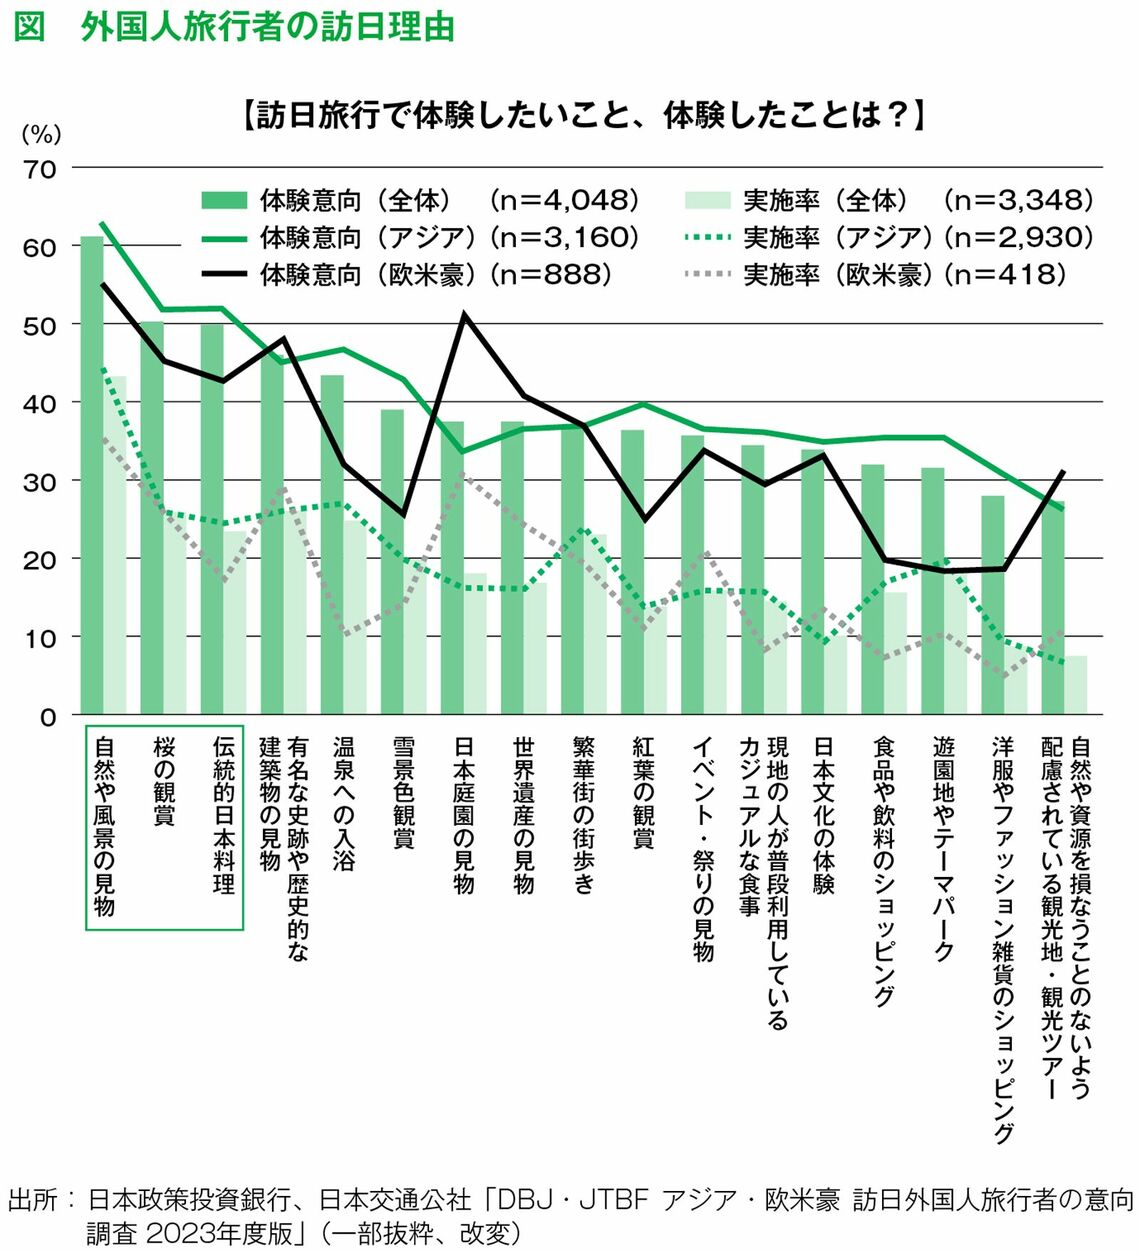 「温泉」「世界遺産」「テーマパーク」のような観光地よりも、「日本のどこにでもあるもの」の人気が高い（グラフ『日本一わかりやすい地方創生の教科書――全く新しい45の新手法＆新常識』より）